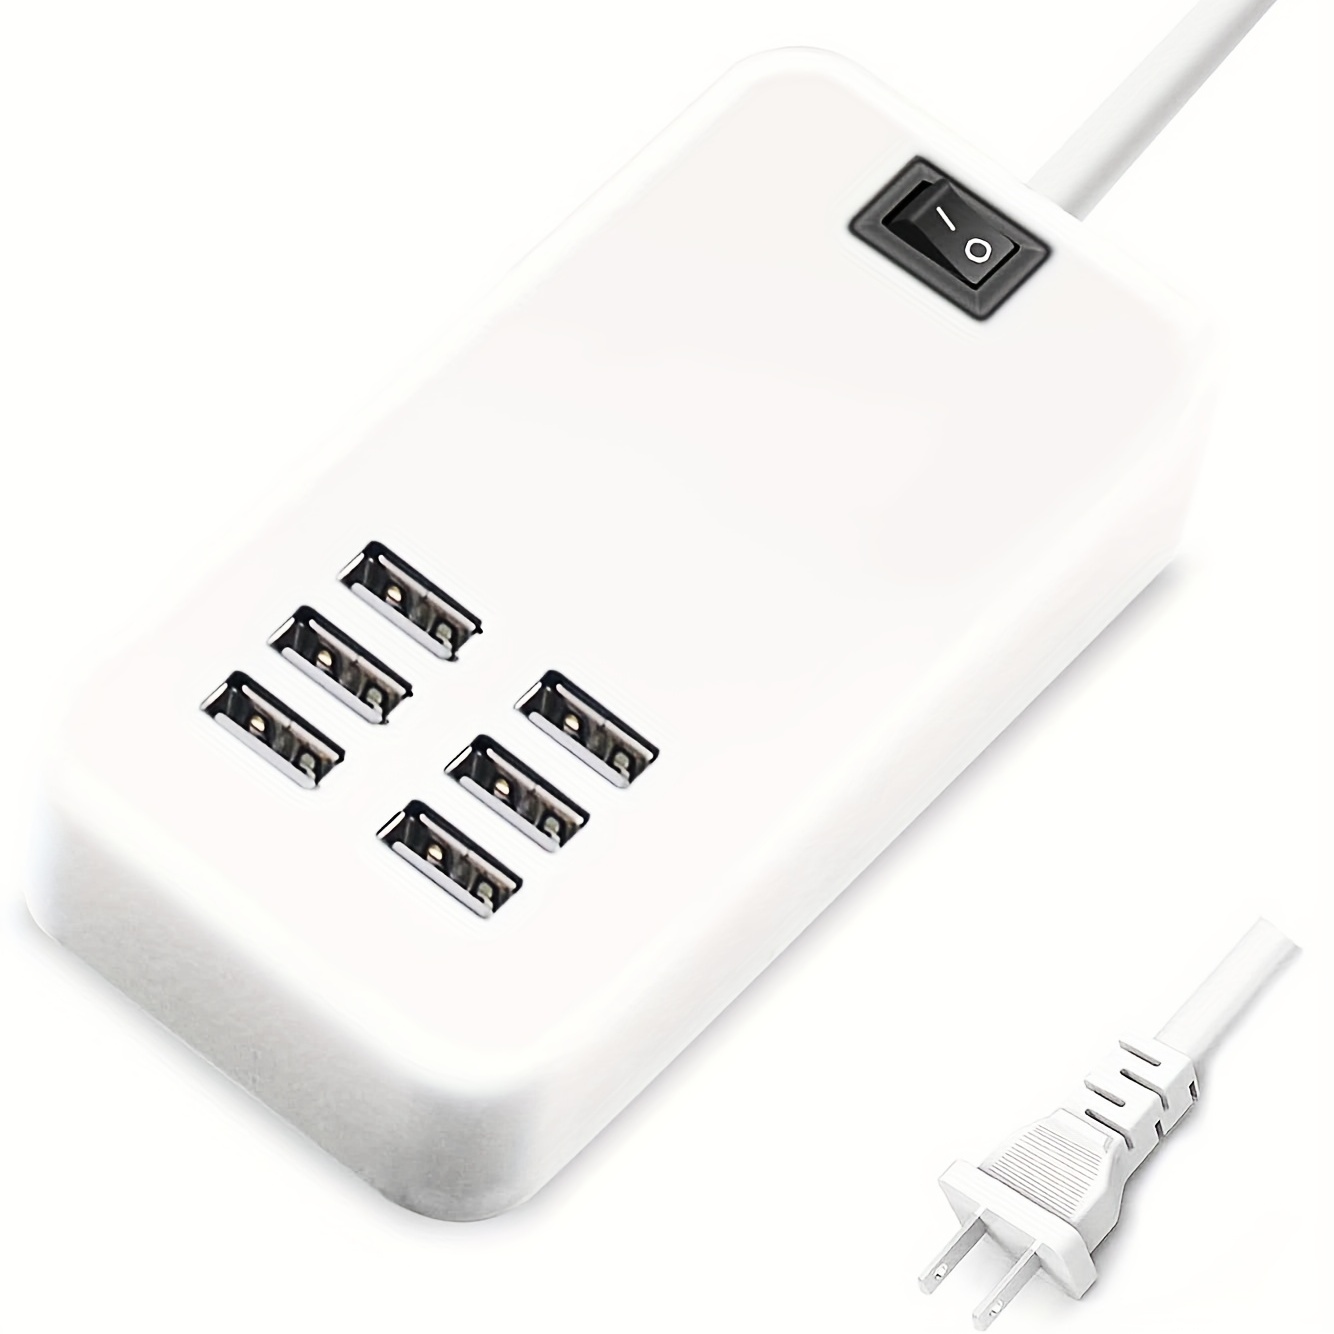 Chargeur USB multiple, station de charge USB 6 ports pour plusieurs  appareils, téléphone, tablette, bande de puissance avec interrupteur ON/OFF